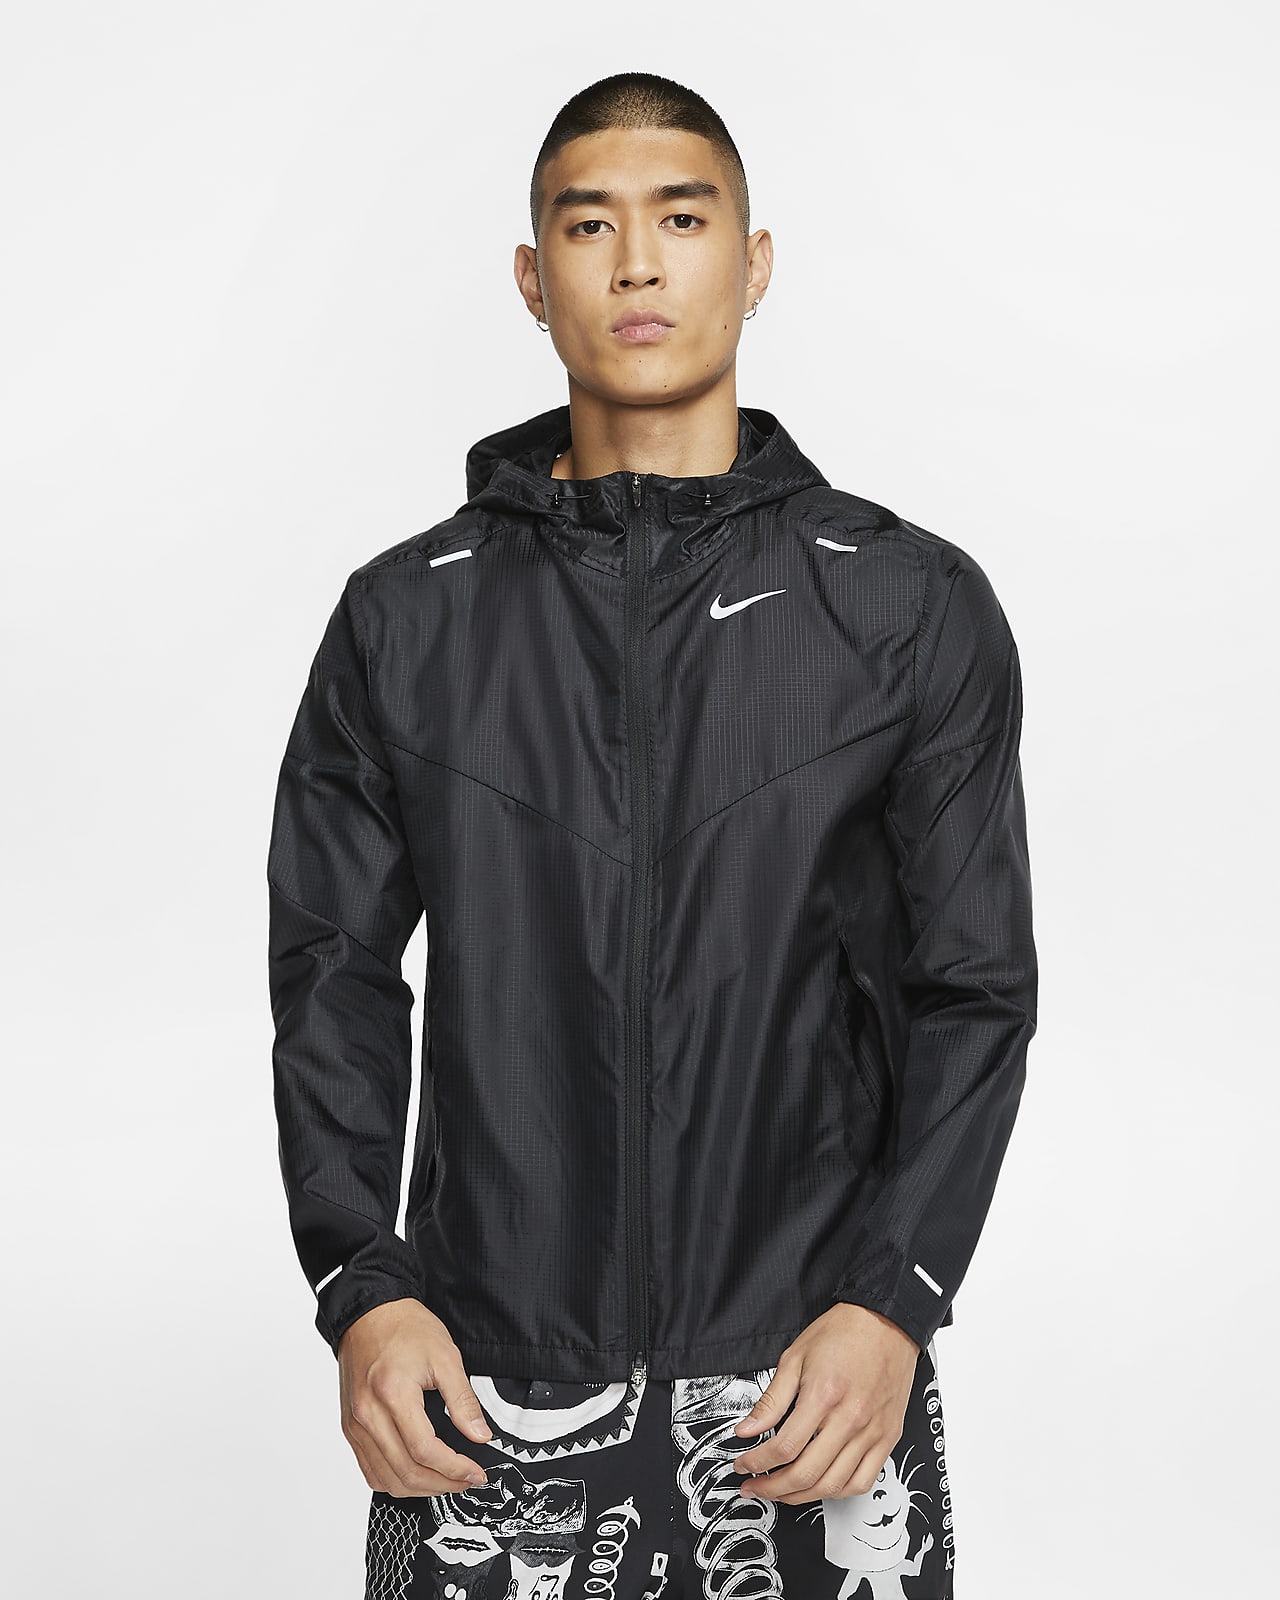 Nike Windrunner Mens' Running Jacket 